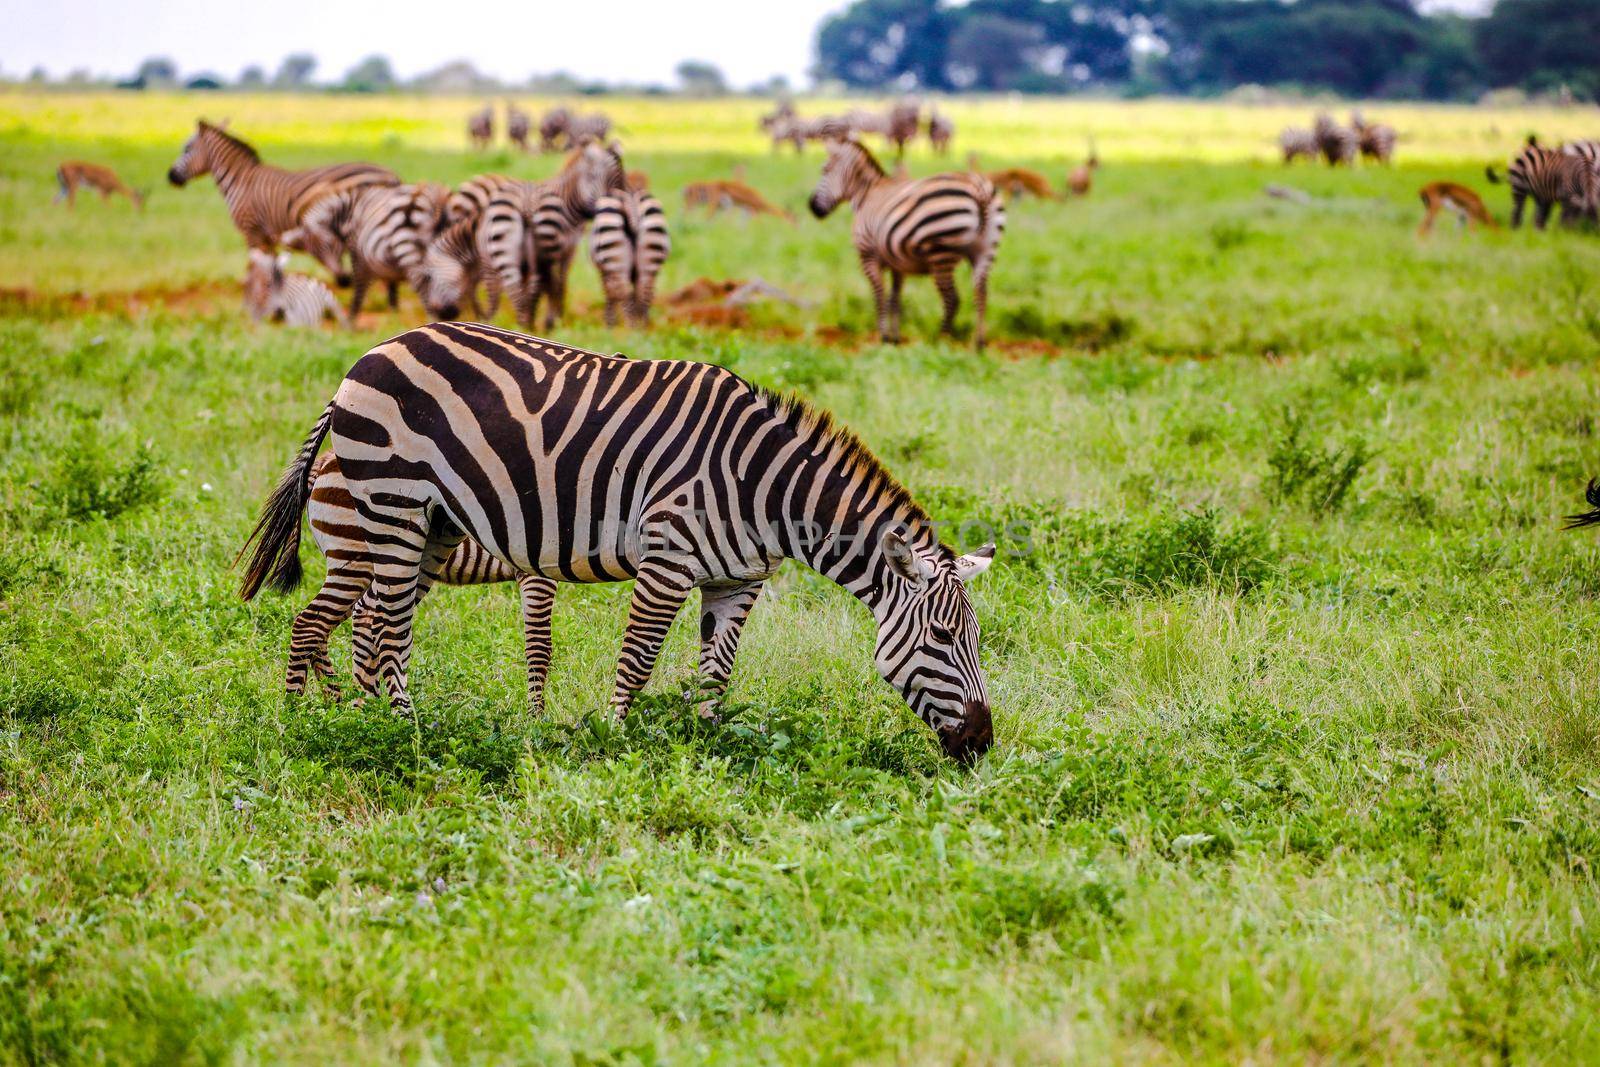 Zebras in Tsavo East National Park, Kenya, Africa by Weltblick